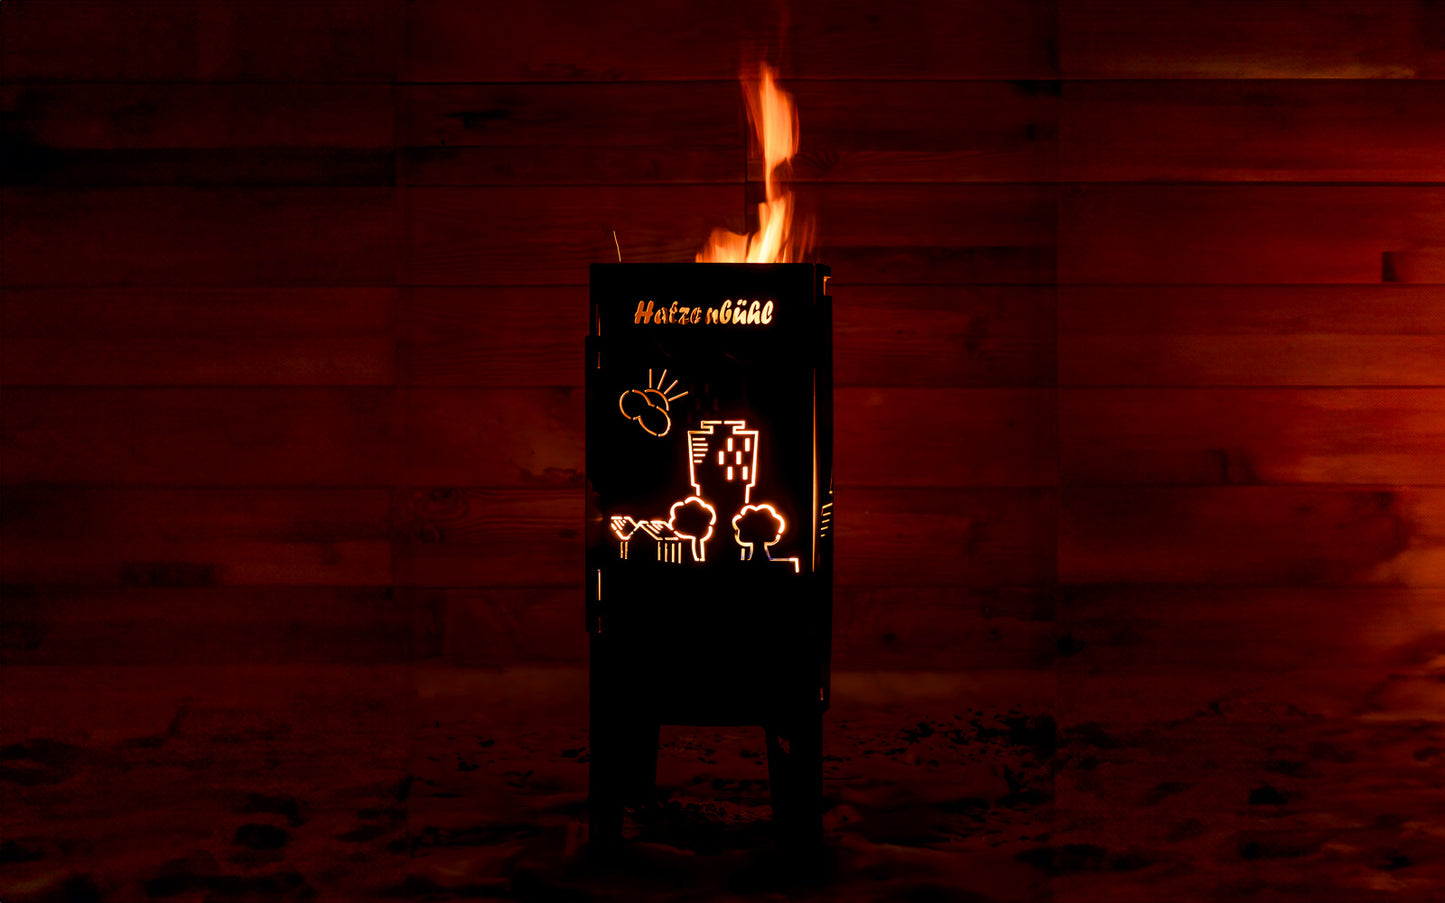 FENNEK Feuersäule Hatzenbühl Edition in Aktion mit schönem loderndem Feuer, das die auf der Feuersäule ausgelaserte Skyline von Hatzenbühl erstrahlen lässt.